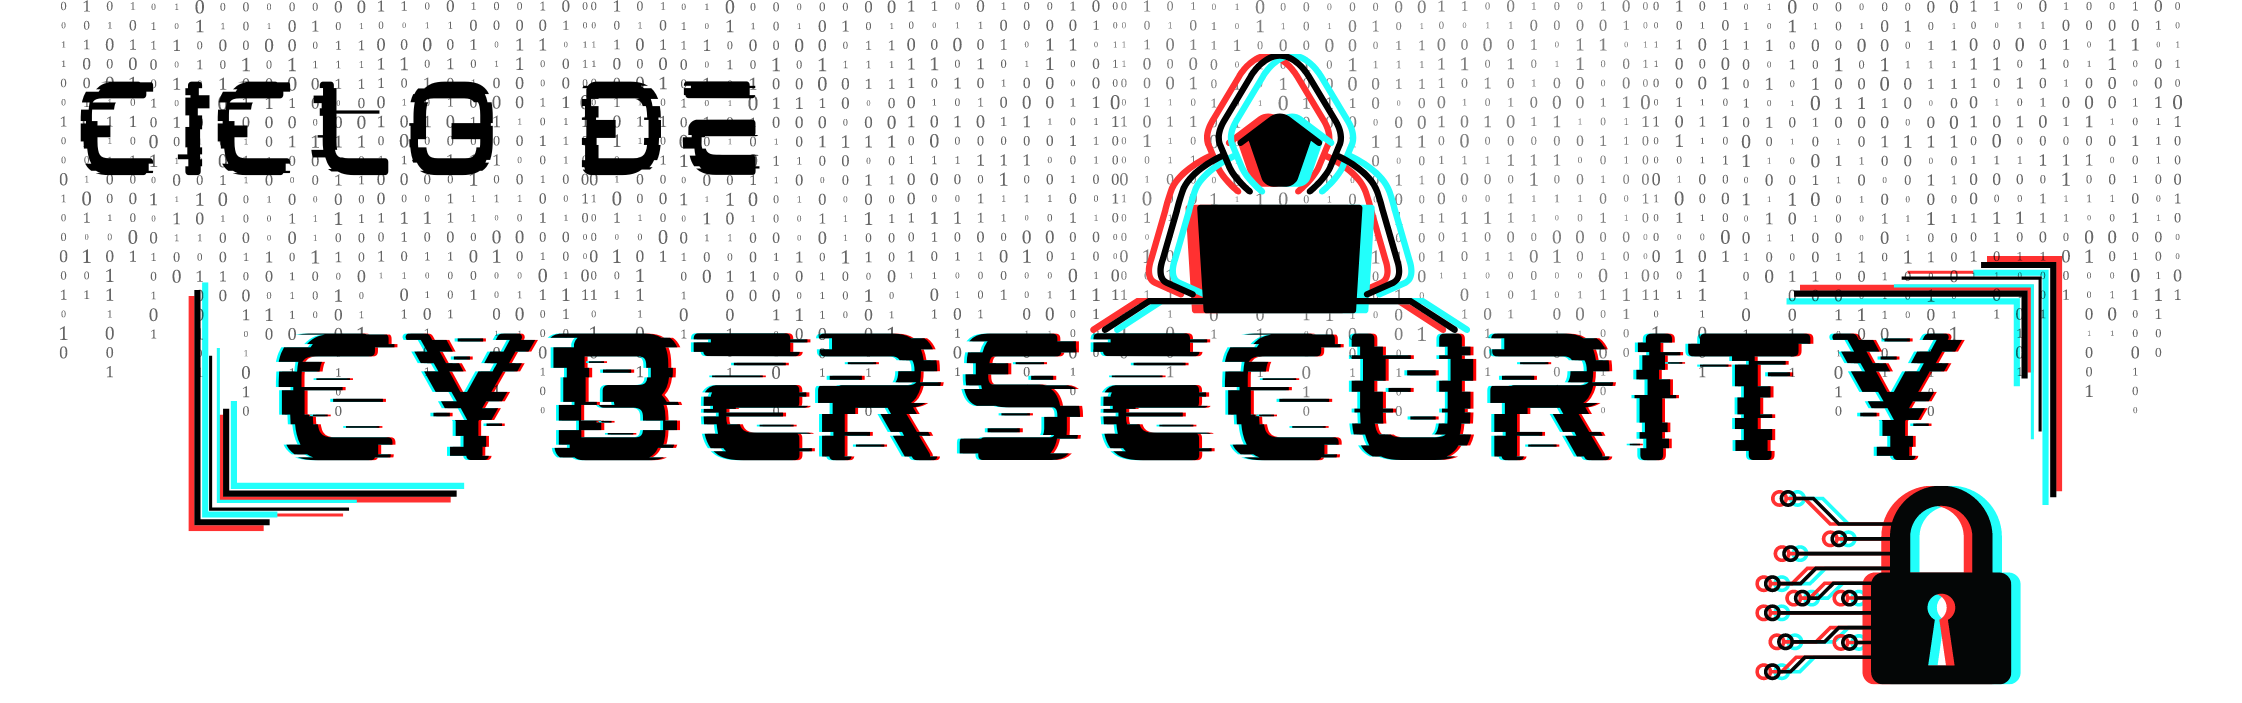 Banner de Cybersecurity